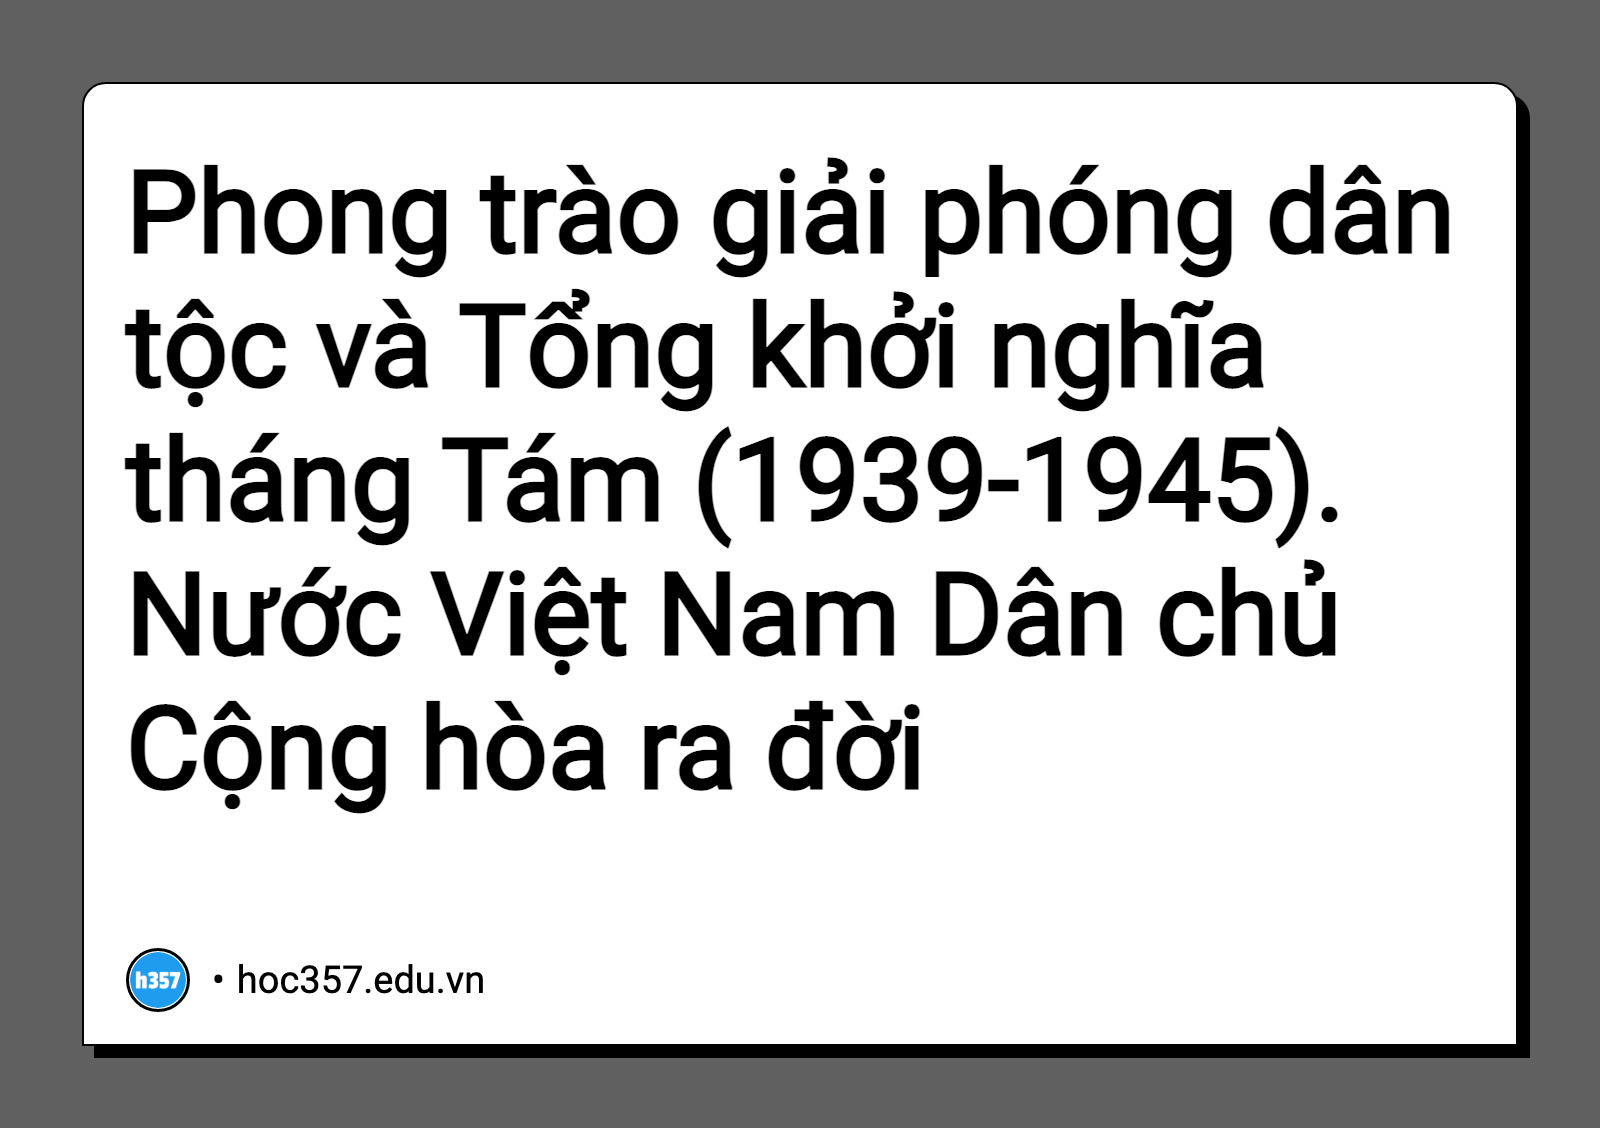 Hình minh họa Phong trào giải phóng dân tộc và Tổng khởi nghĩa tháng Tám (1939-1945). Nước Việt Nam Dân chủ Cộng hòa ra đời